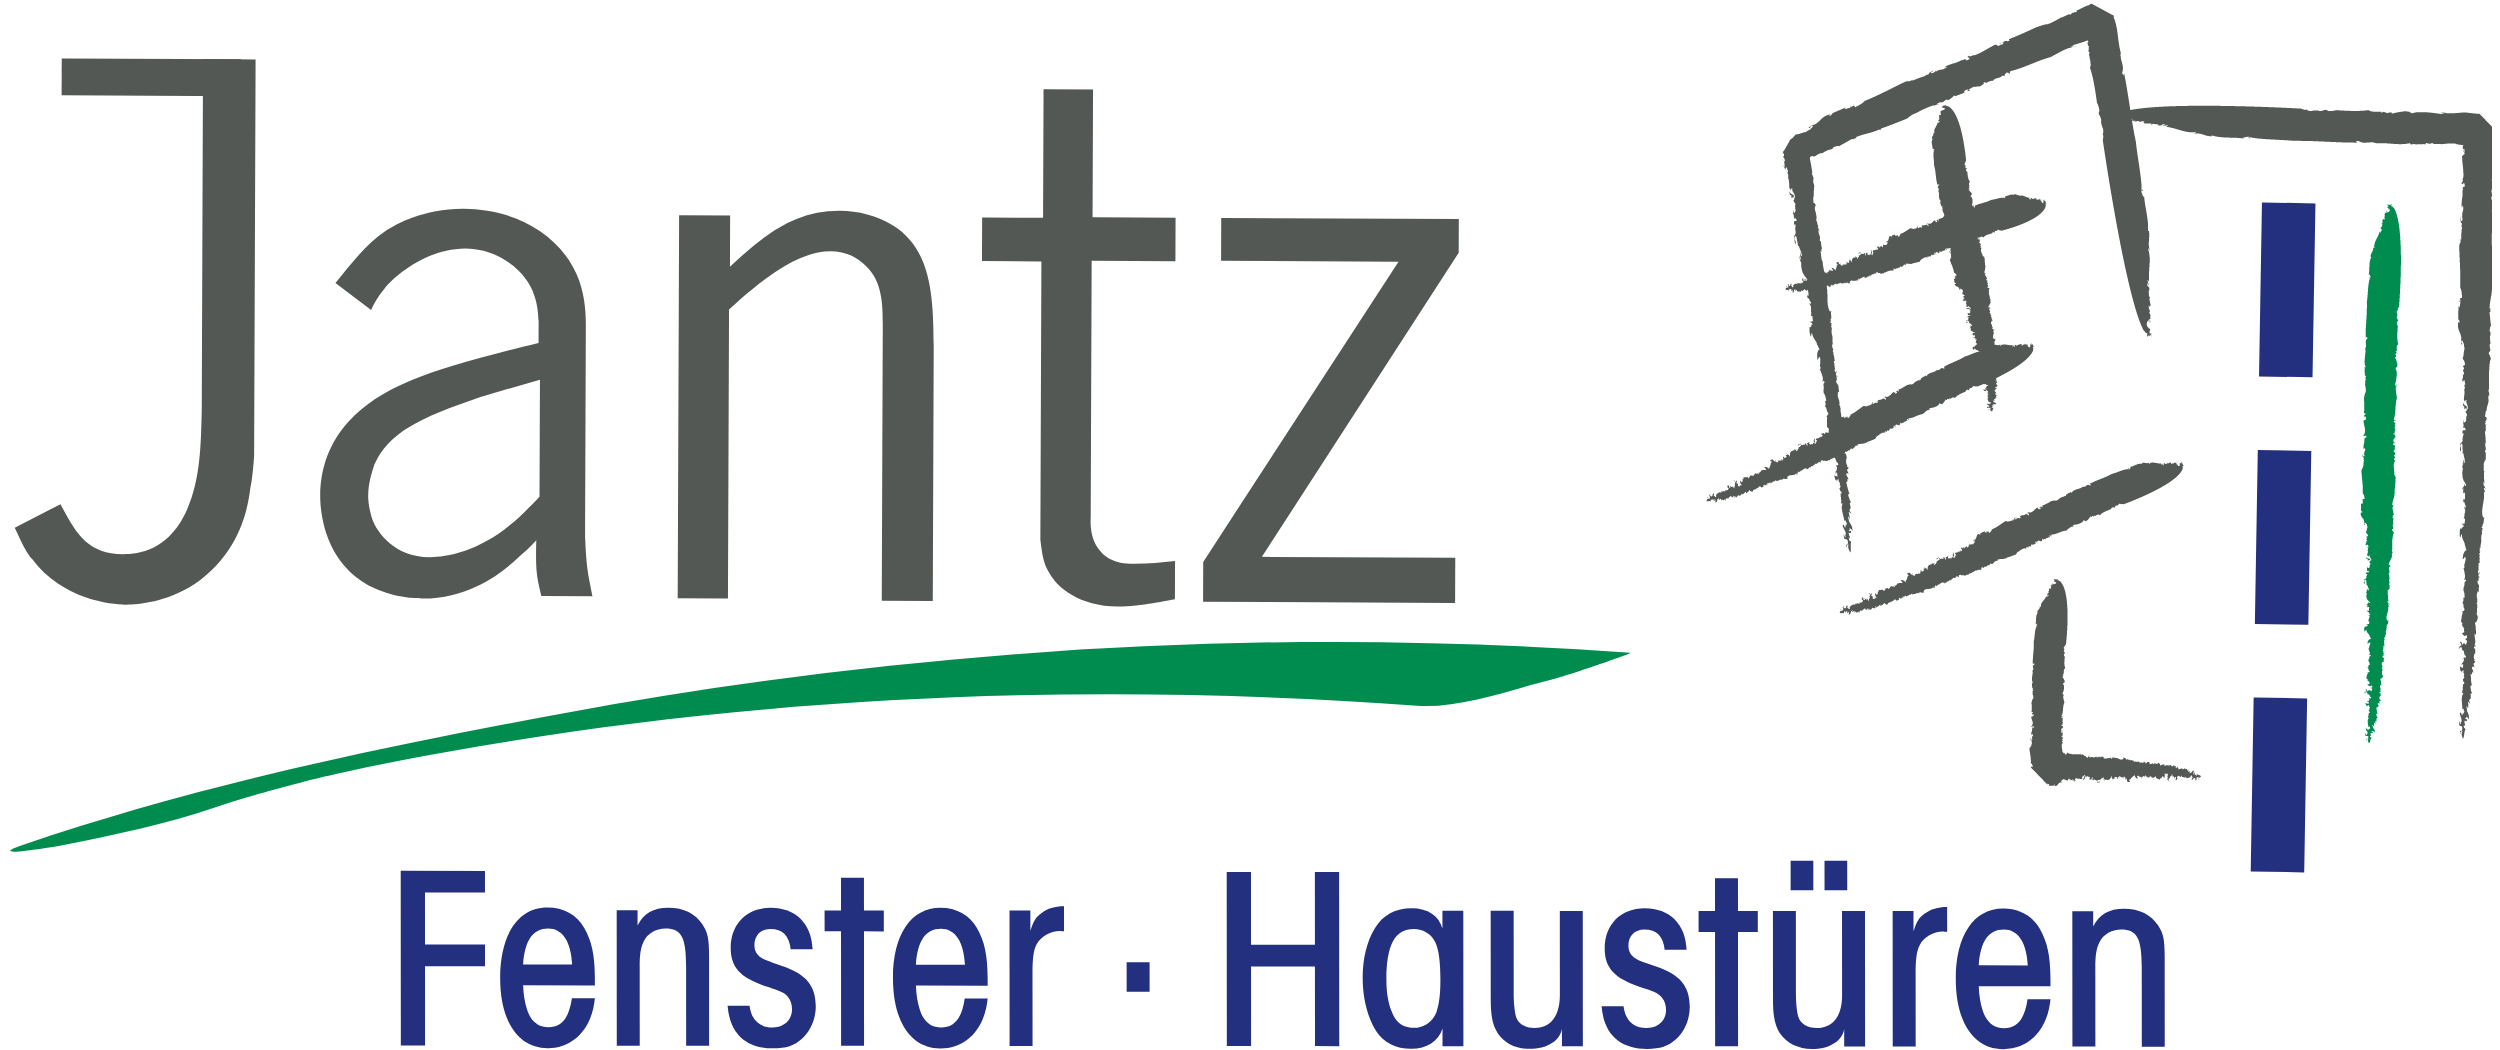 Jantz Logo